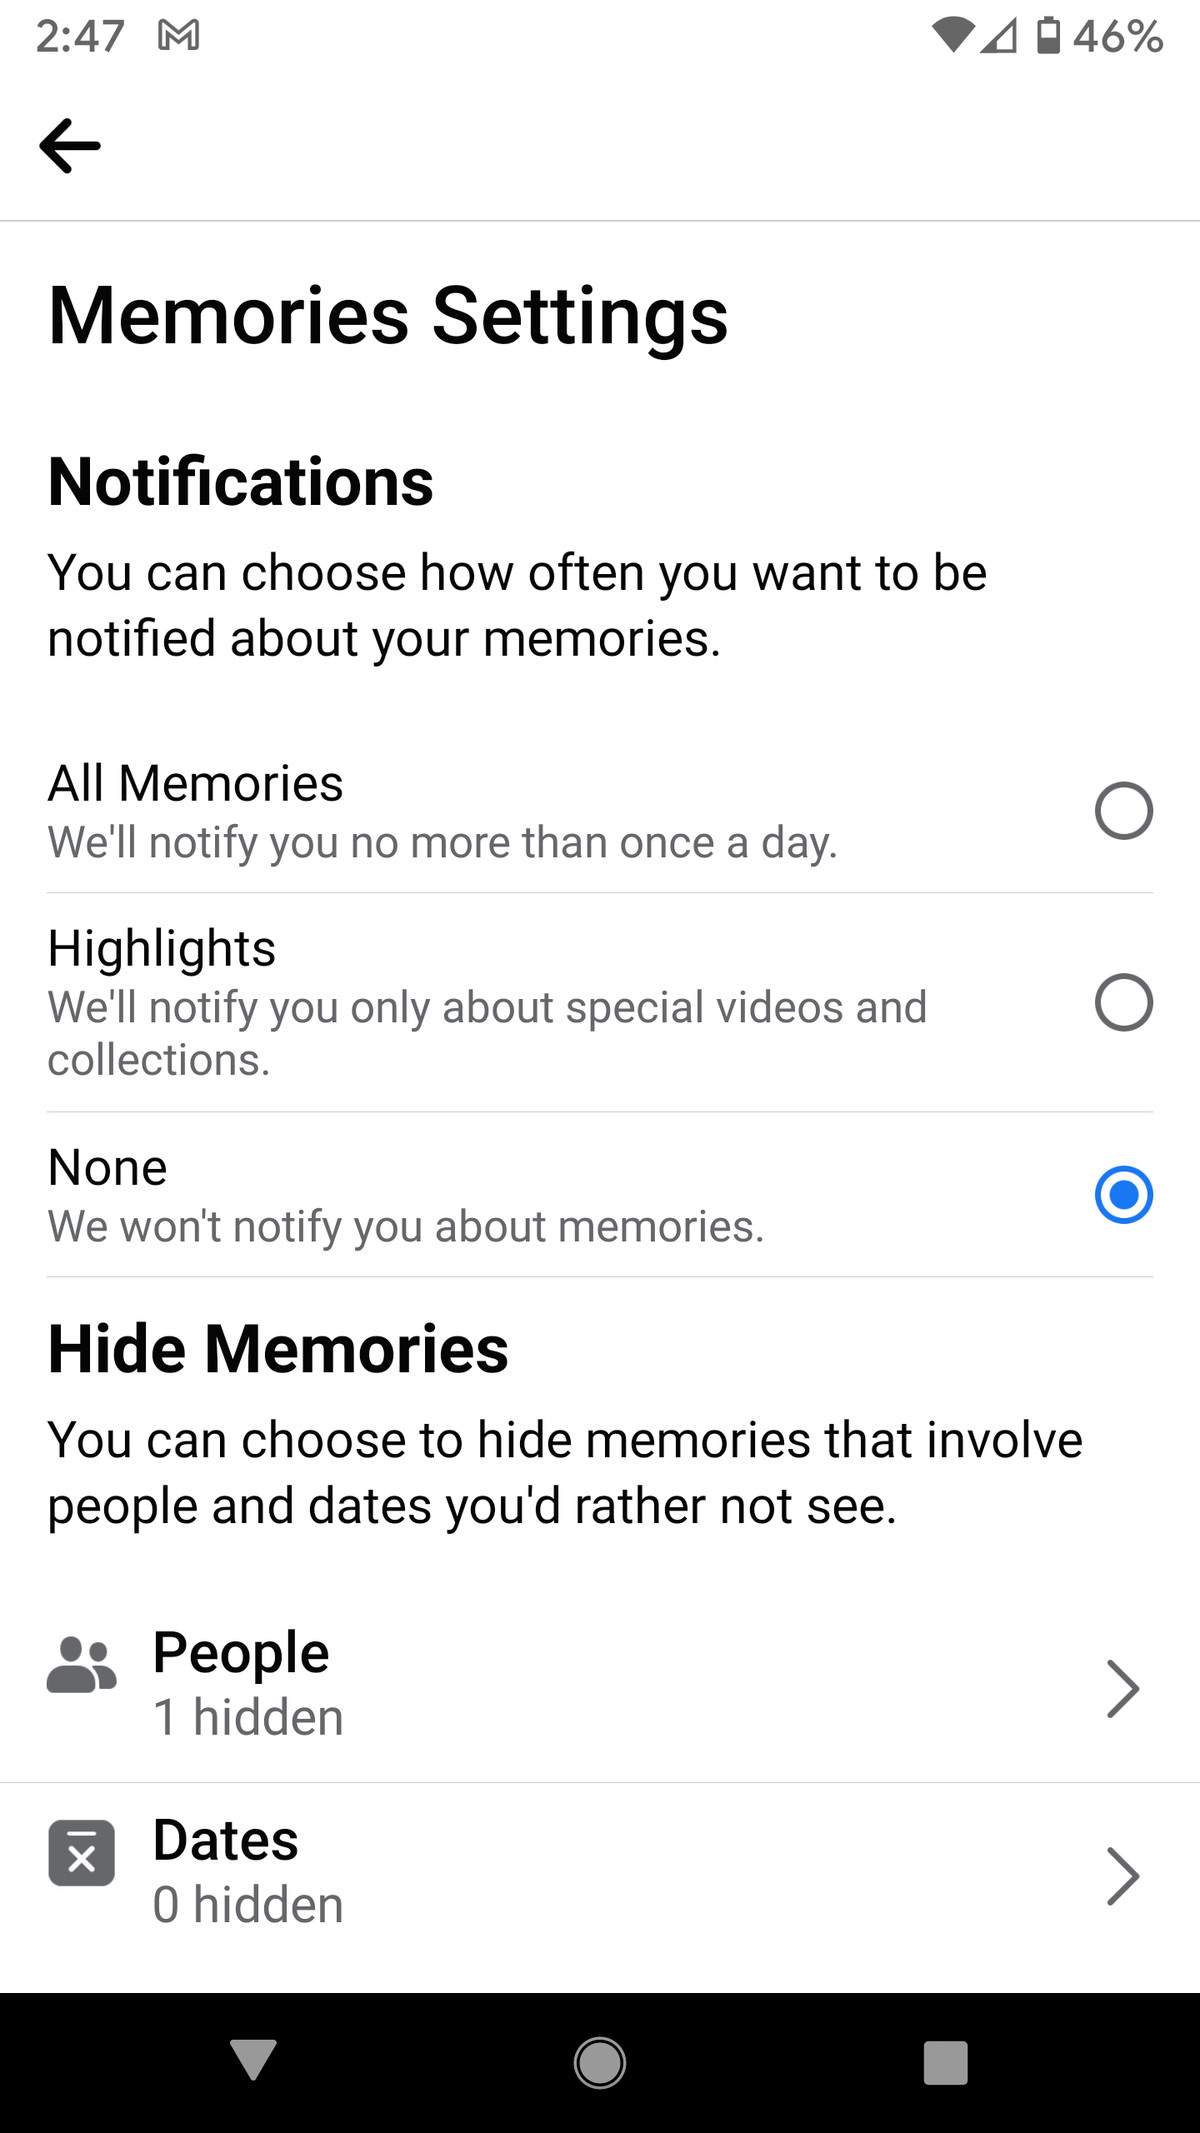 Además de ocultar personas o fechas, puede elegir la frecuencia con la que debe recibir notificaciones de recuerdos.